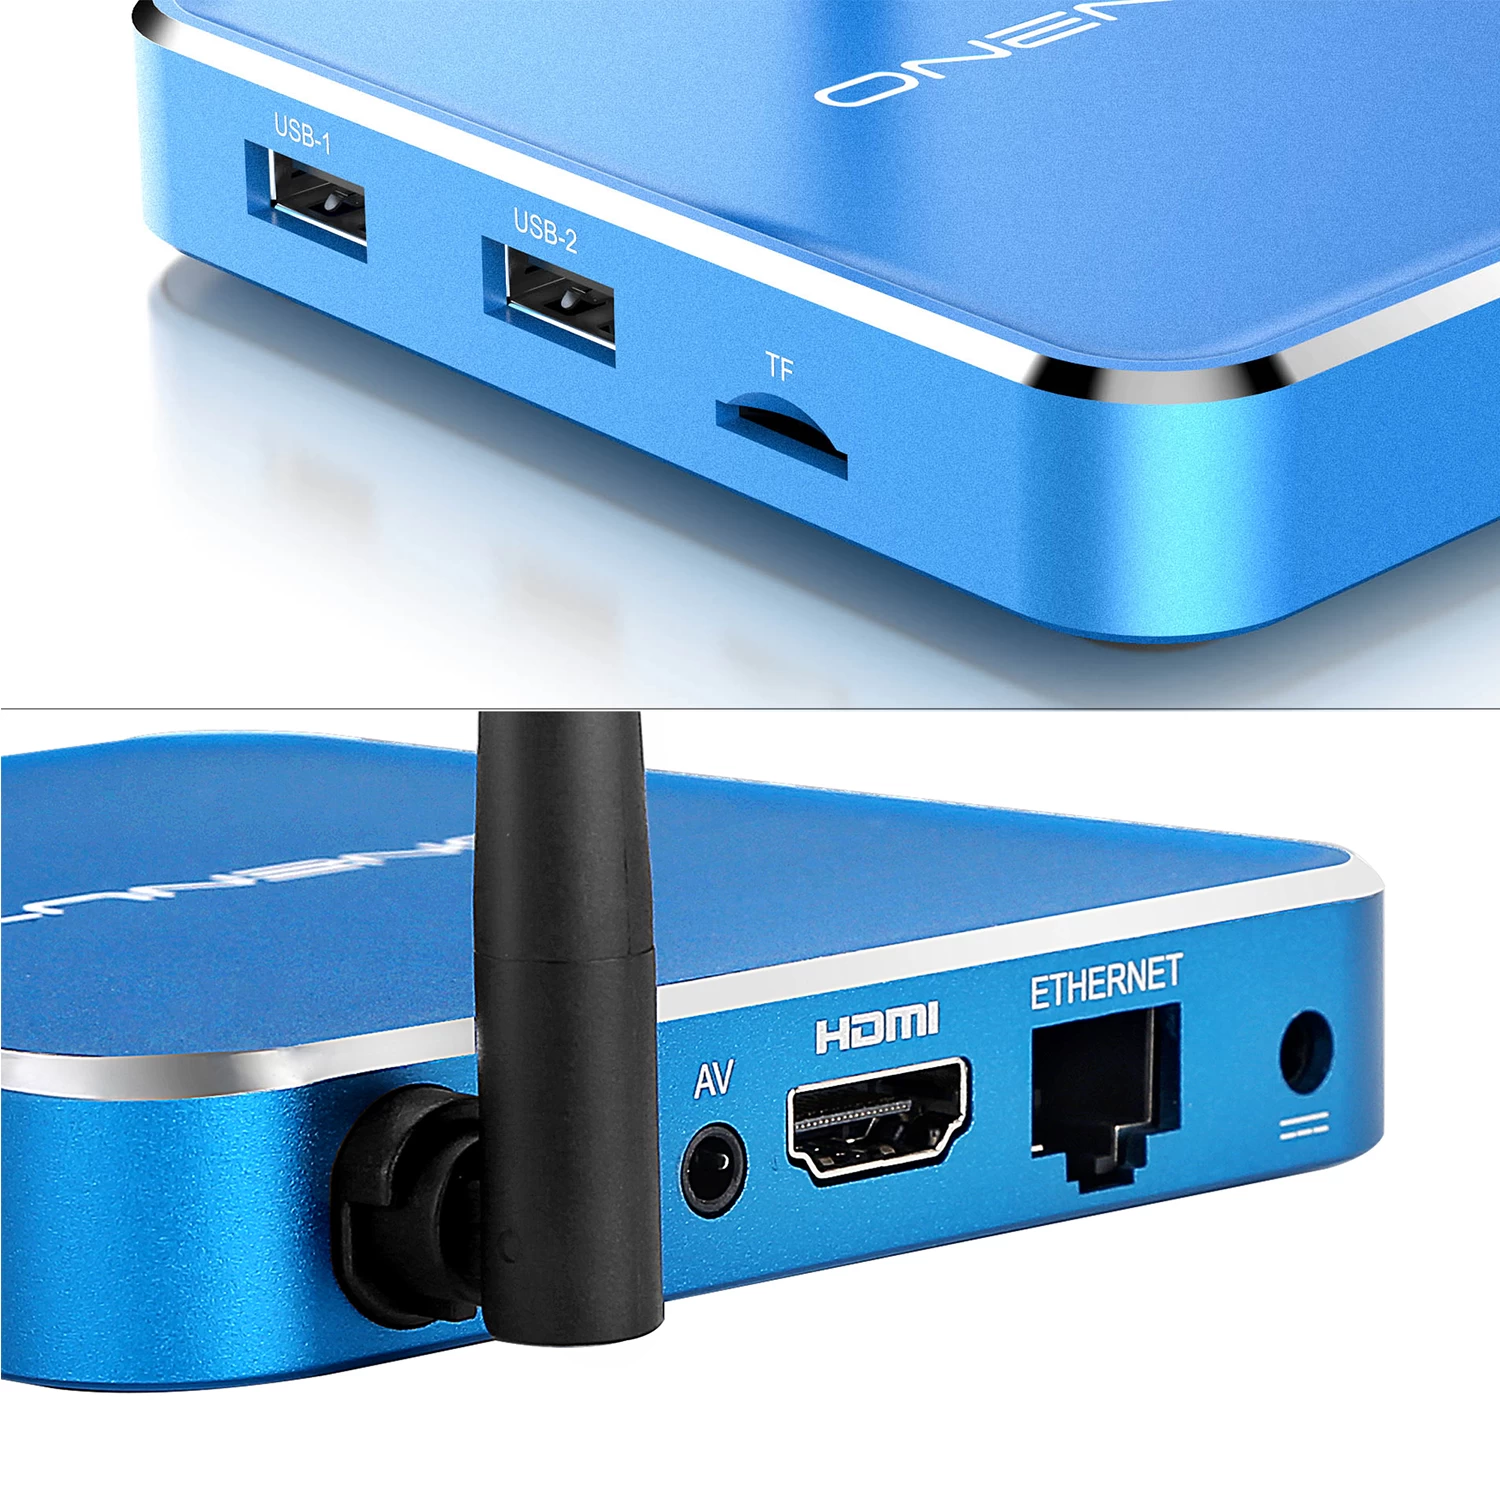 텔레비젼 상자 인조 인간 HDMI 비디오 녹화 UDP 방송 인조 인간 텔레비젼 상자